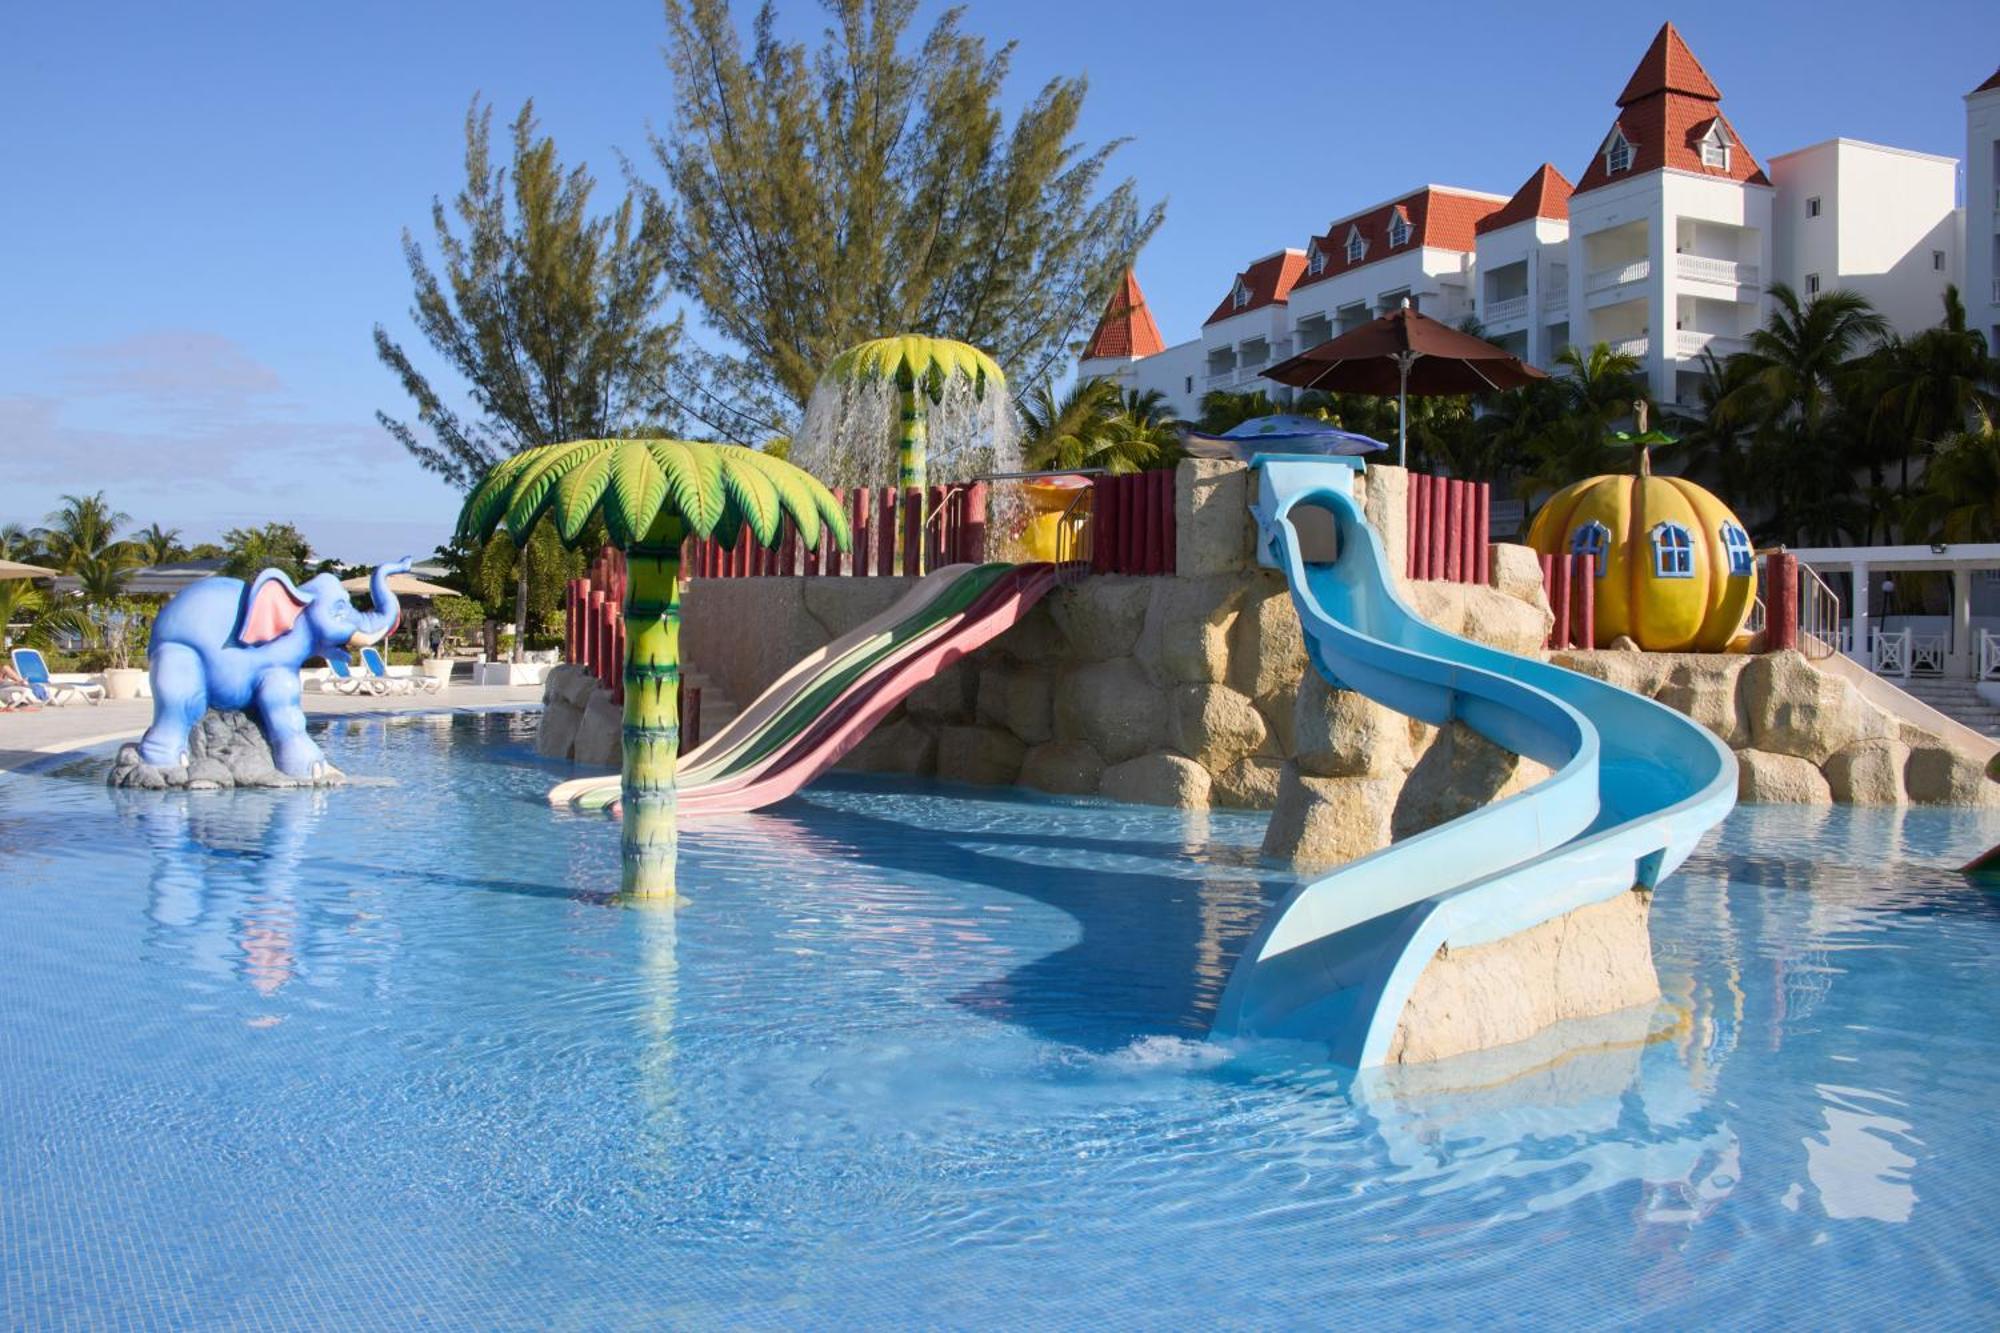 바이아 프린시페 그랜드 자메이카 - 올 인클루시브 호텔 런어웨이베이 외부 사진